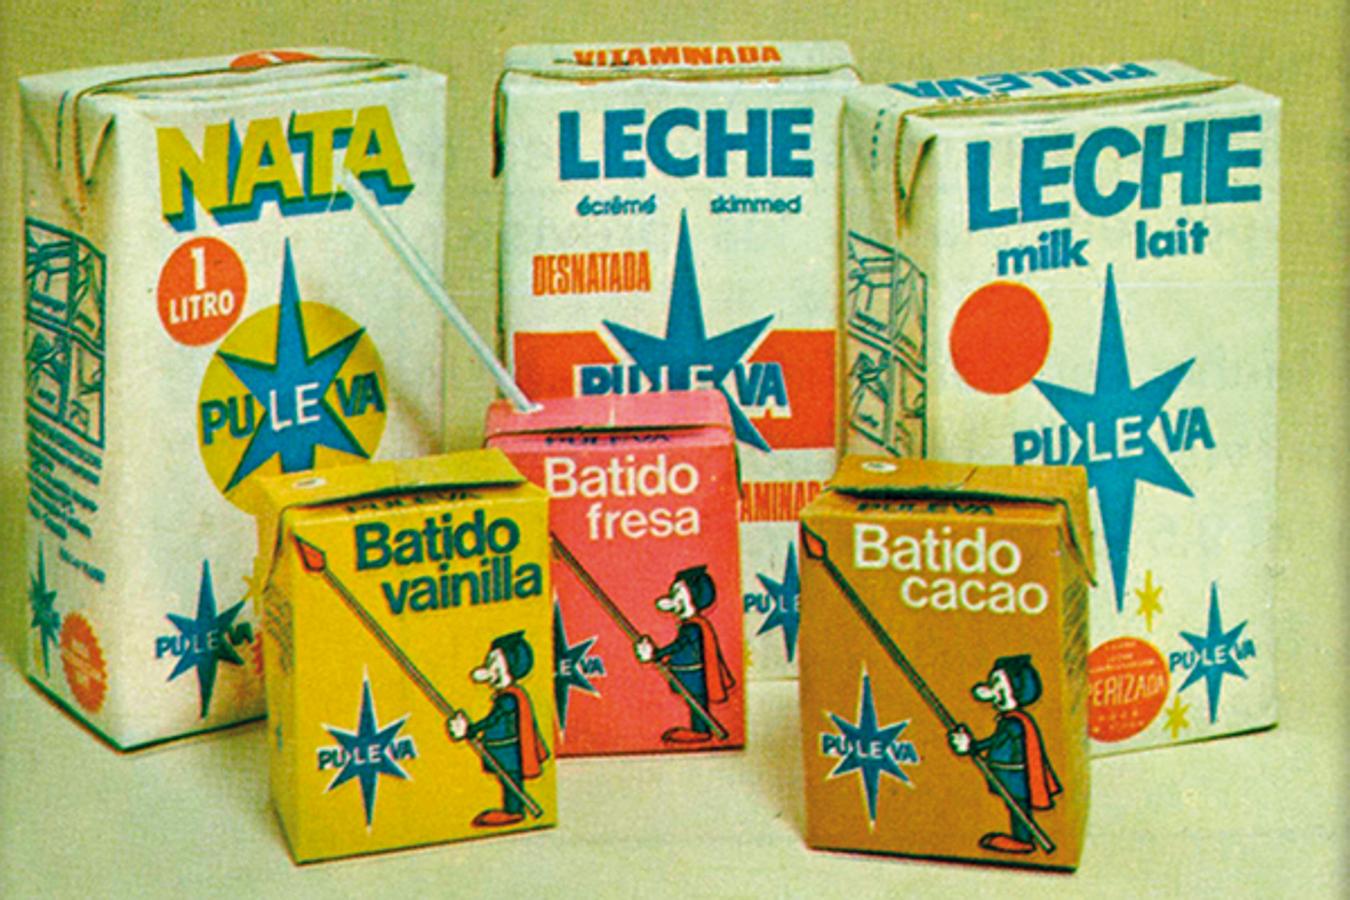 1981. PULEVA EN LOS 80. Gama de productos lácteos Puleva a comienzos de la década de los ochenta, con los productos más vendidos: la leche clásica y los batidos.